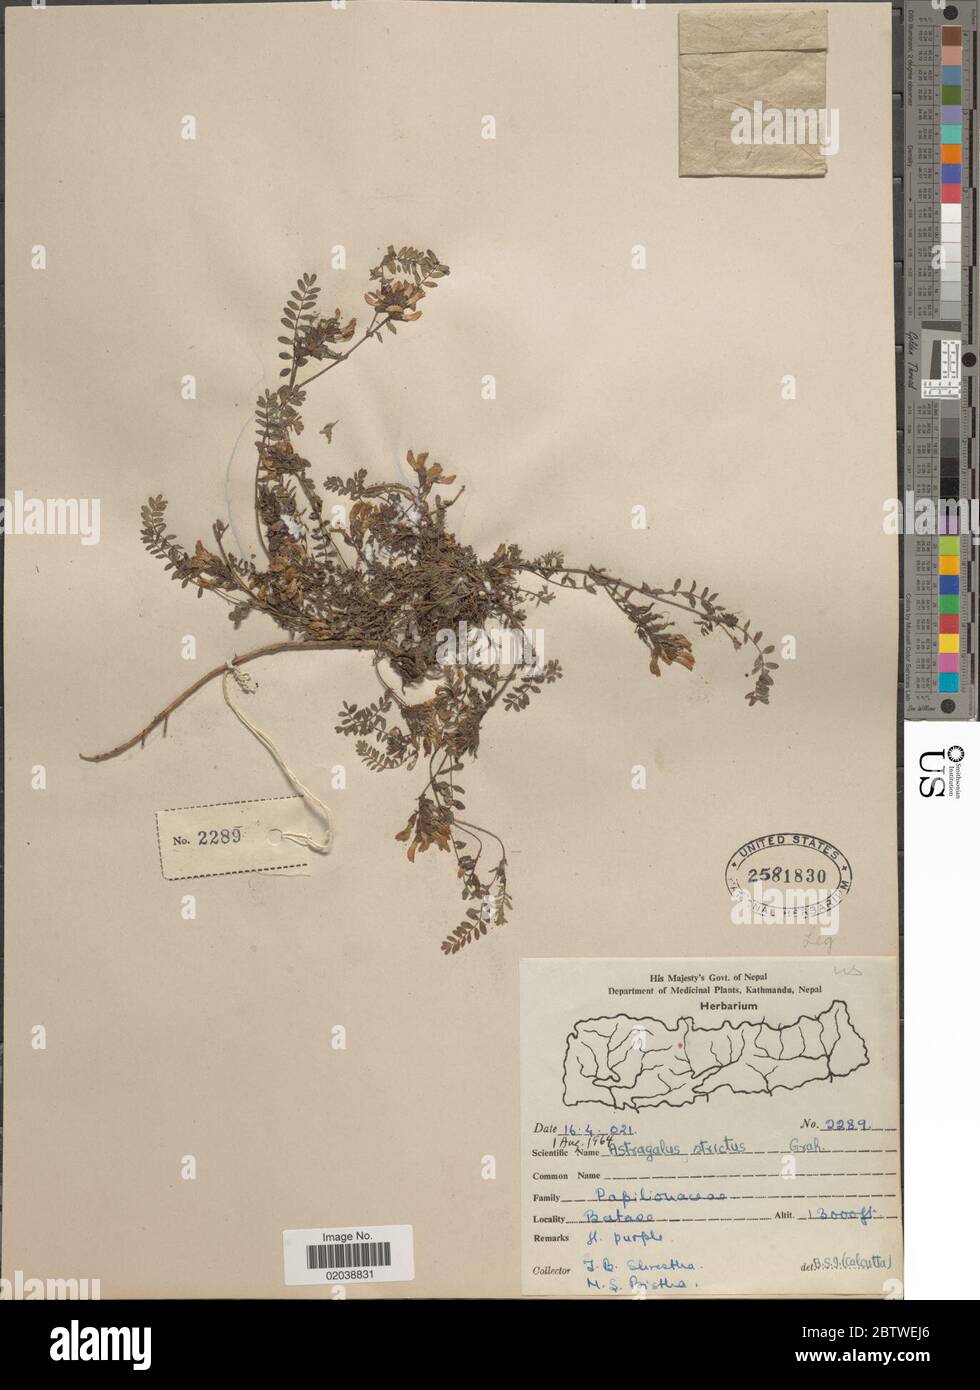 Astragalus strictus Graham ex Benth. Stock Photo